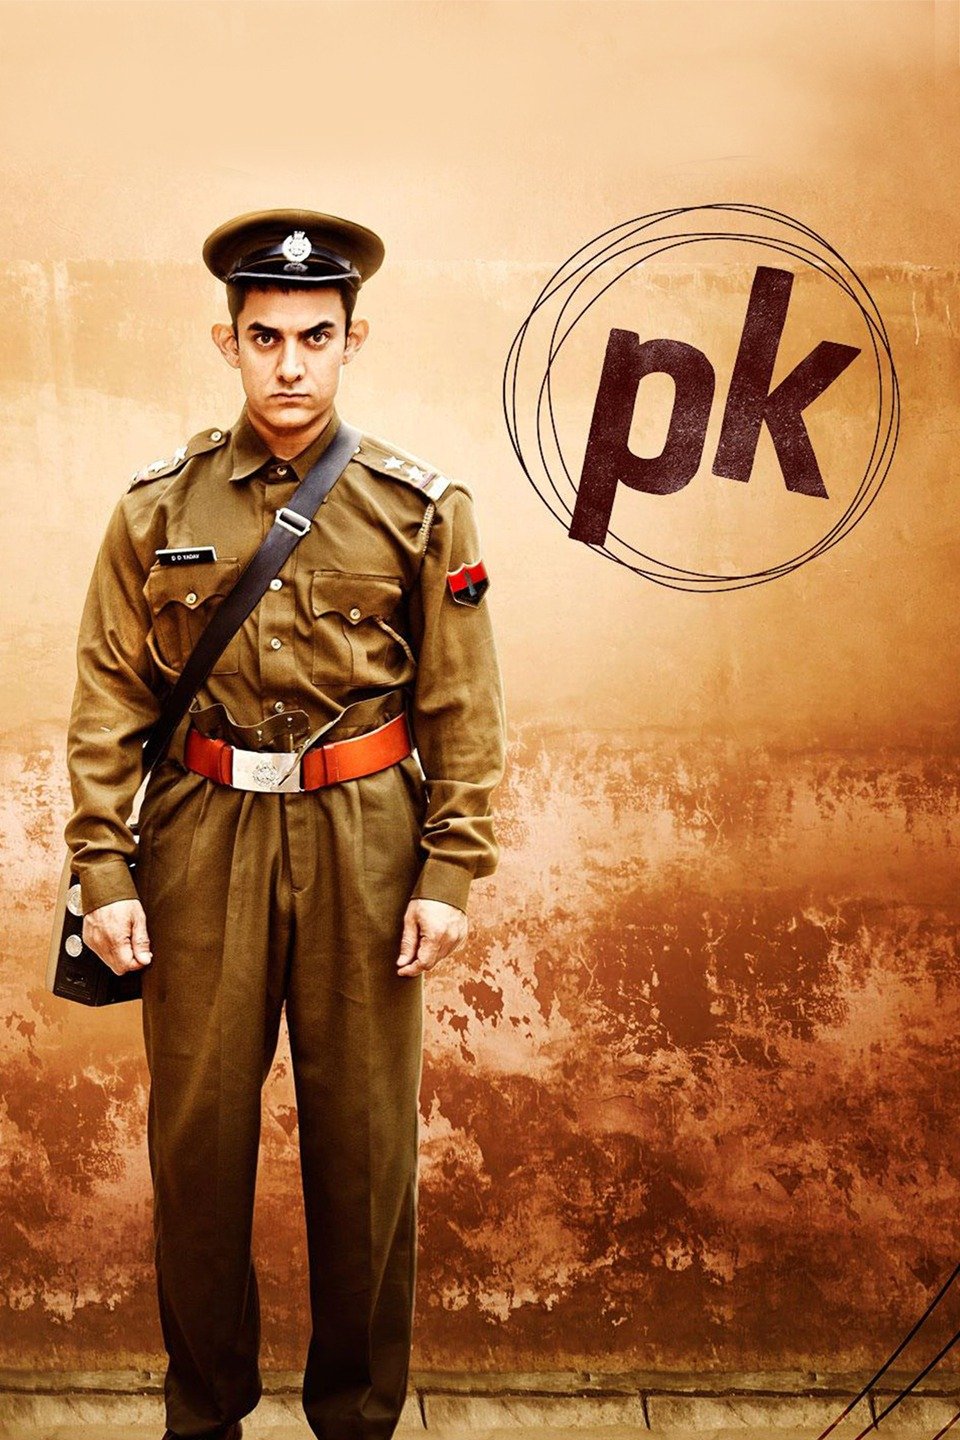 [อินเดีย] PK (2014) พีเค ผู้ชายปาฏิหาริย์ [1080p] [พากย์อินเดีย 5.1] [Soundtrack บรรยายไทย + อังกฤษ] [เสียงอินเดีย + ซับไทย] [OPENLOAD}